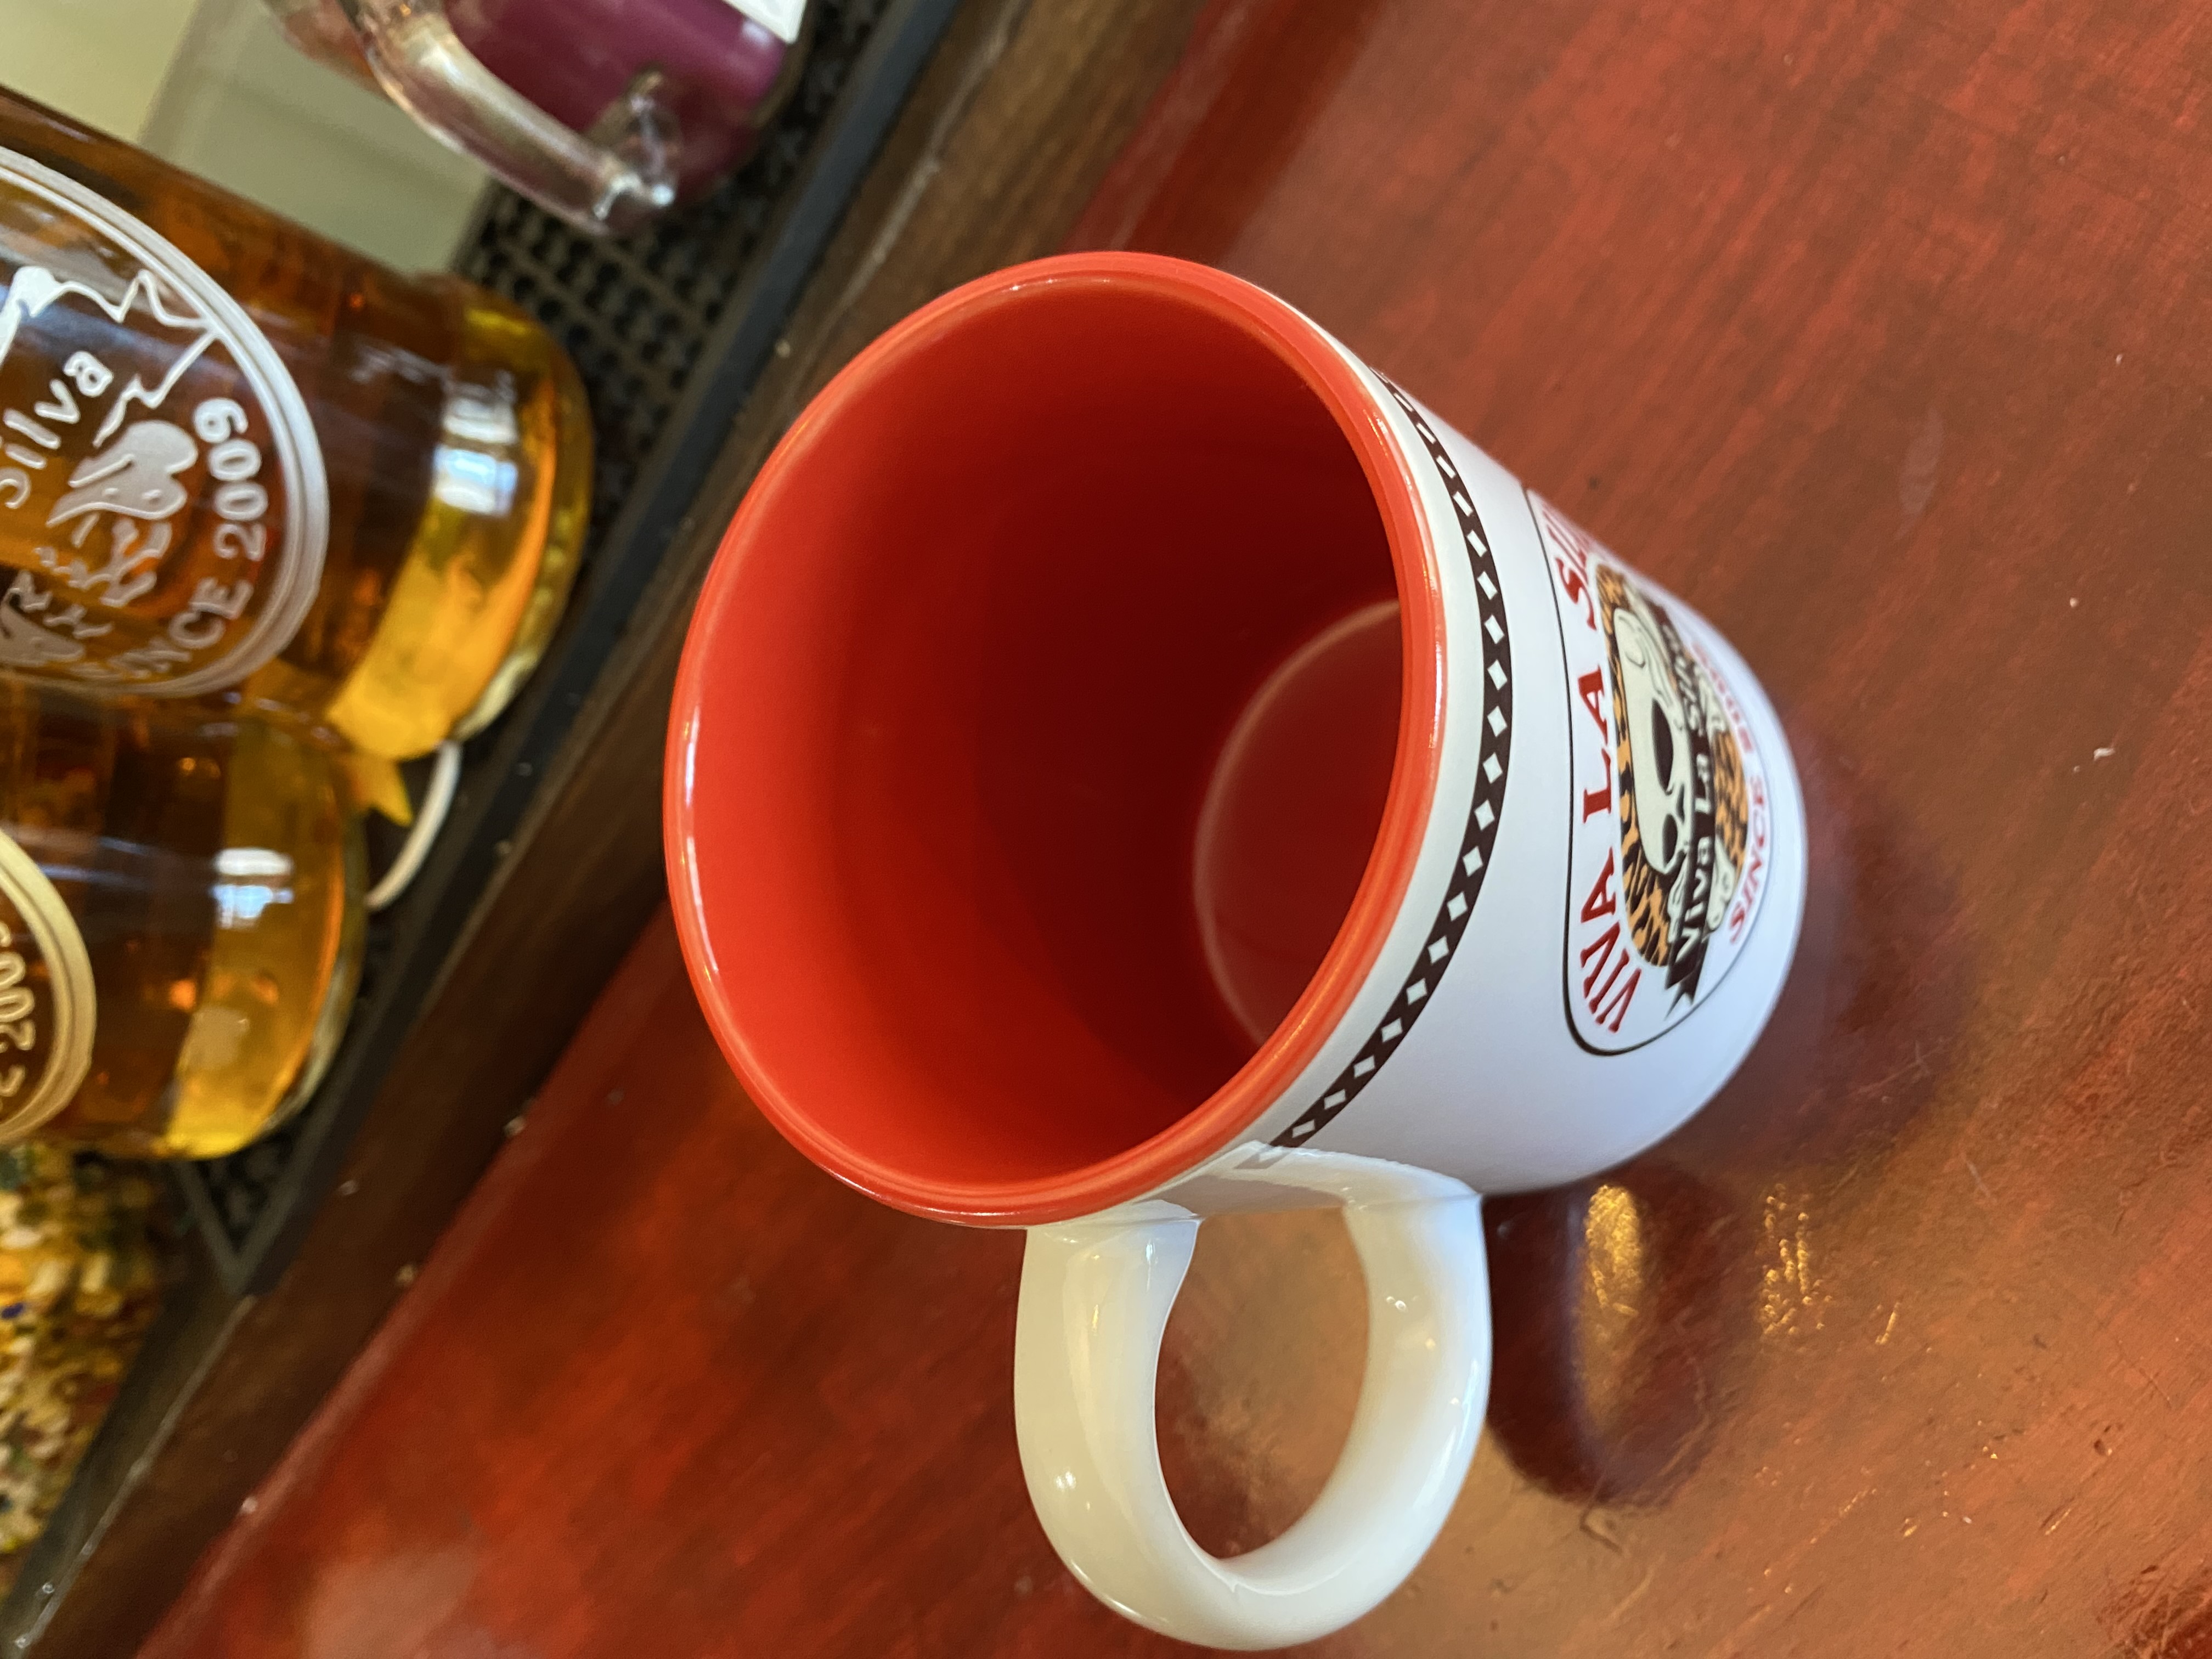 v.l.s Mug Cup画像